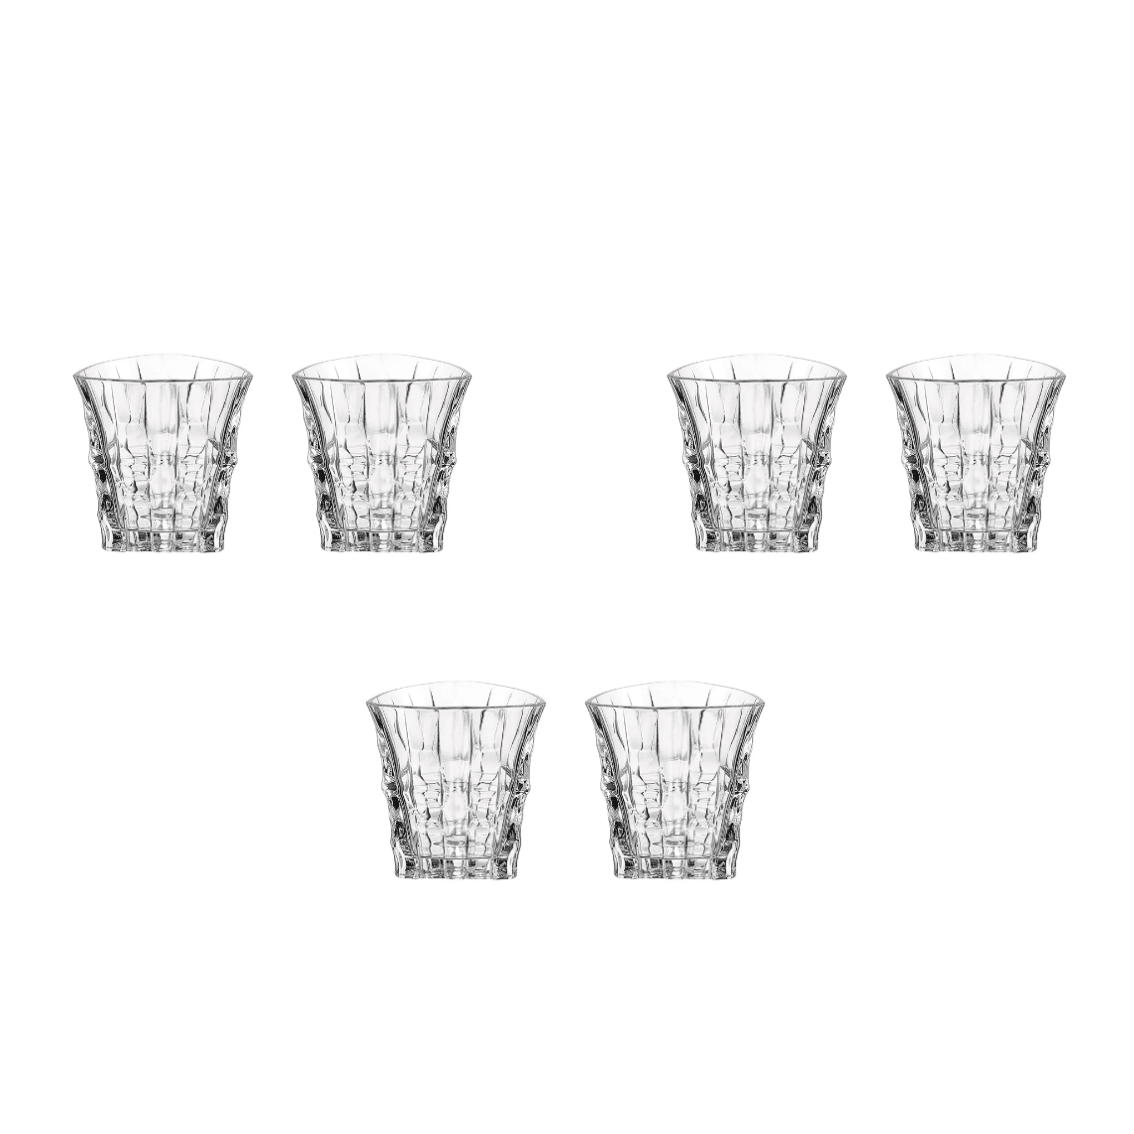 Bohemia Crystal - Tumbler Glass Set 6 Pieces - 270ml - 270005012